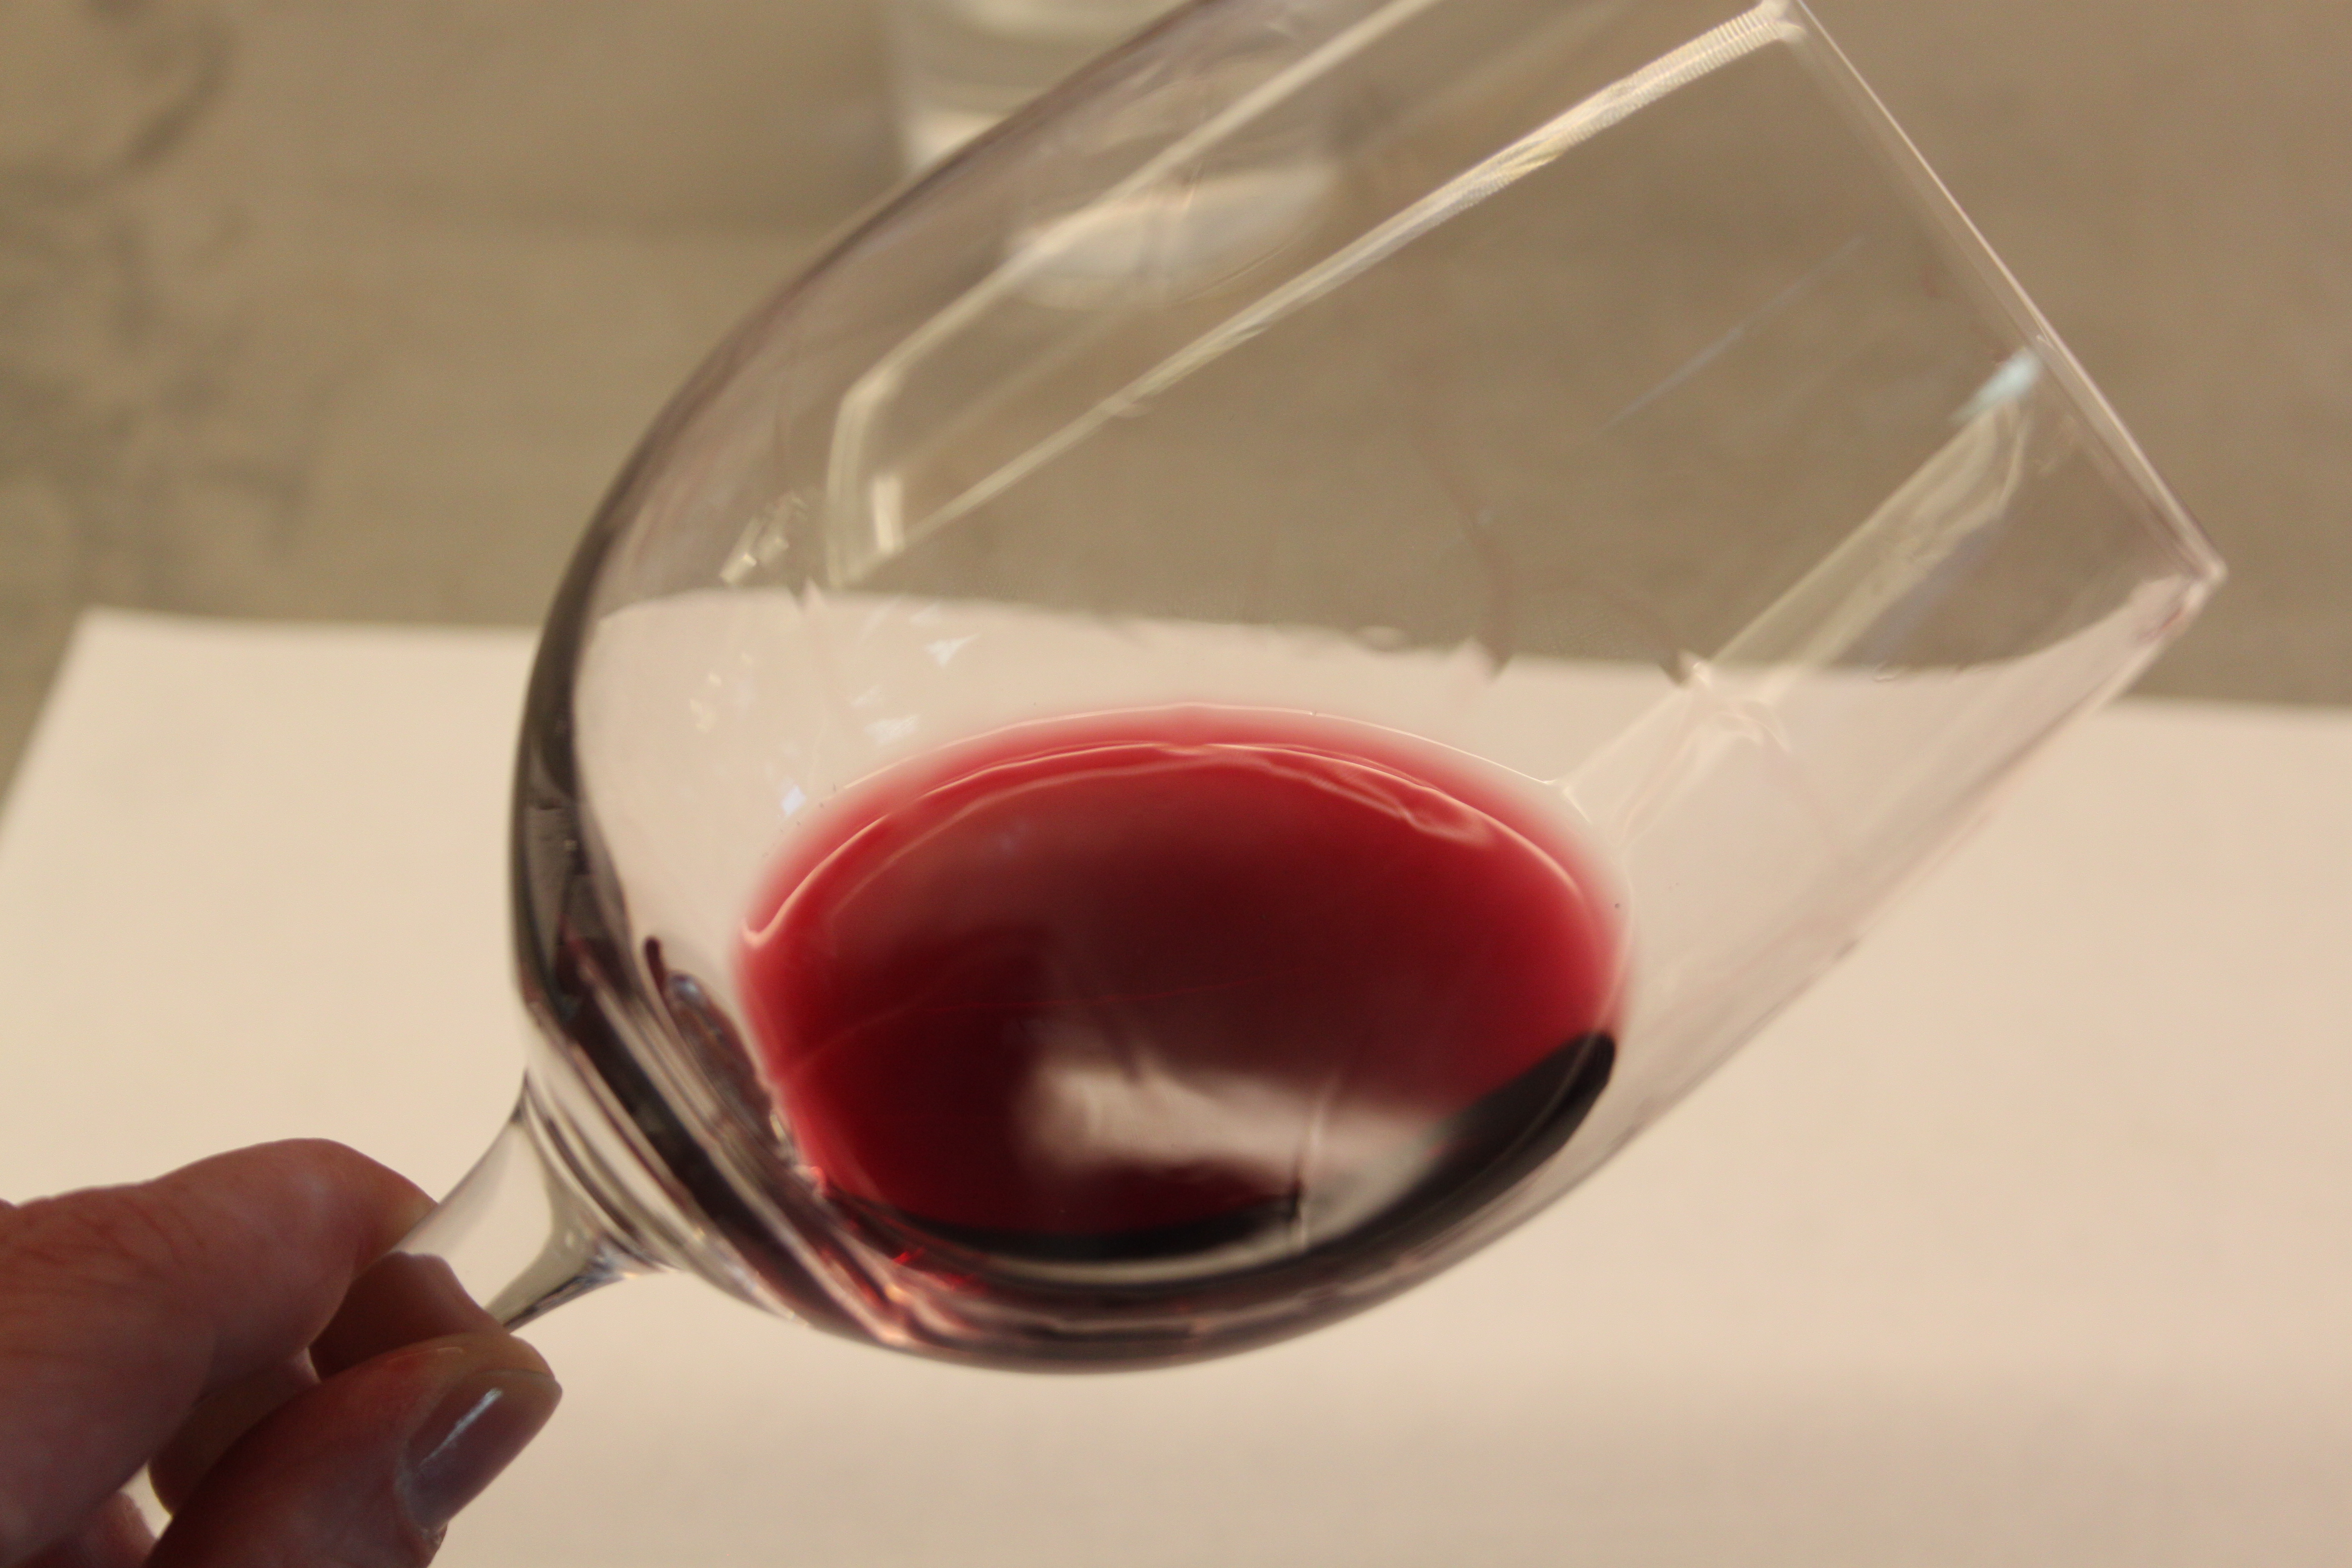 Das Glas schräg und gegen eine helle Oberfläche halten: so stellt man fest, welche Farbe ein Wein hat.